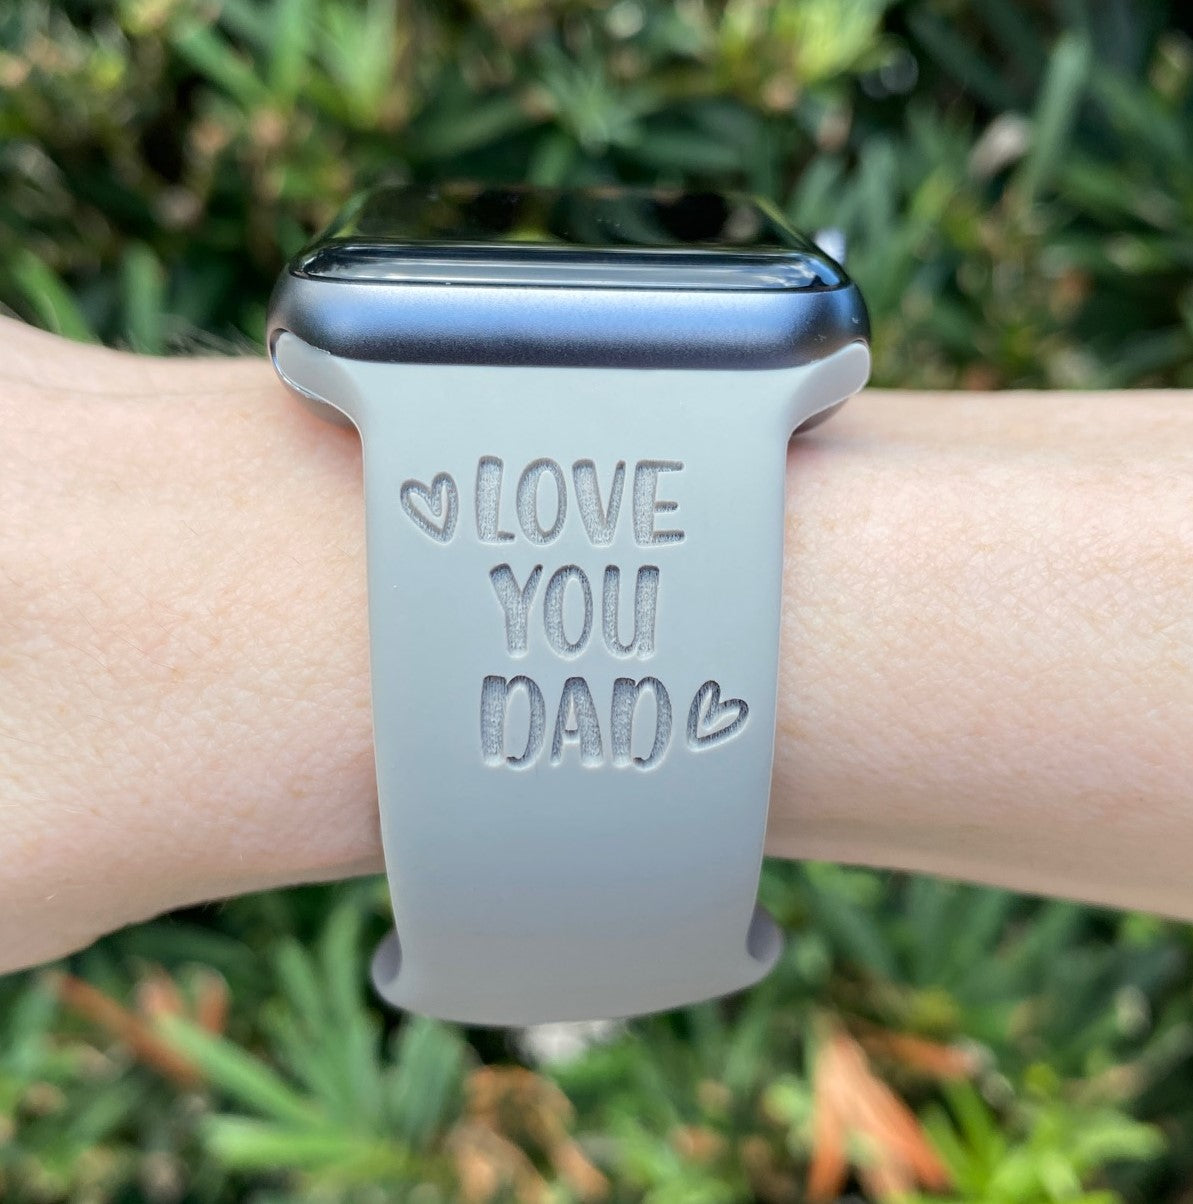 Best Dad Apple Watch Band